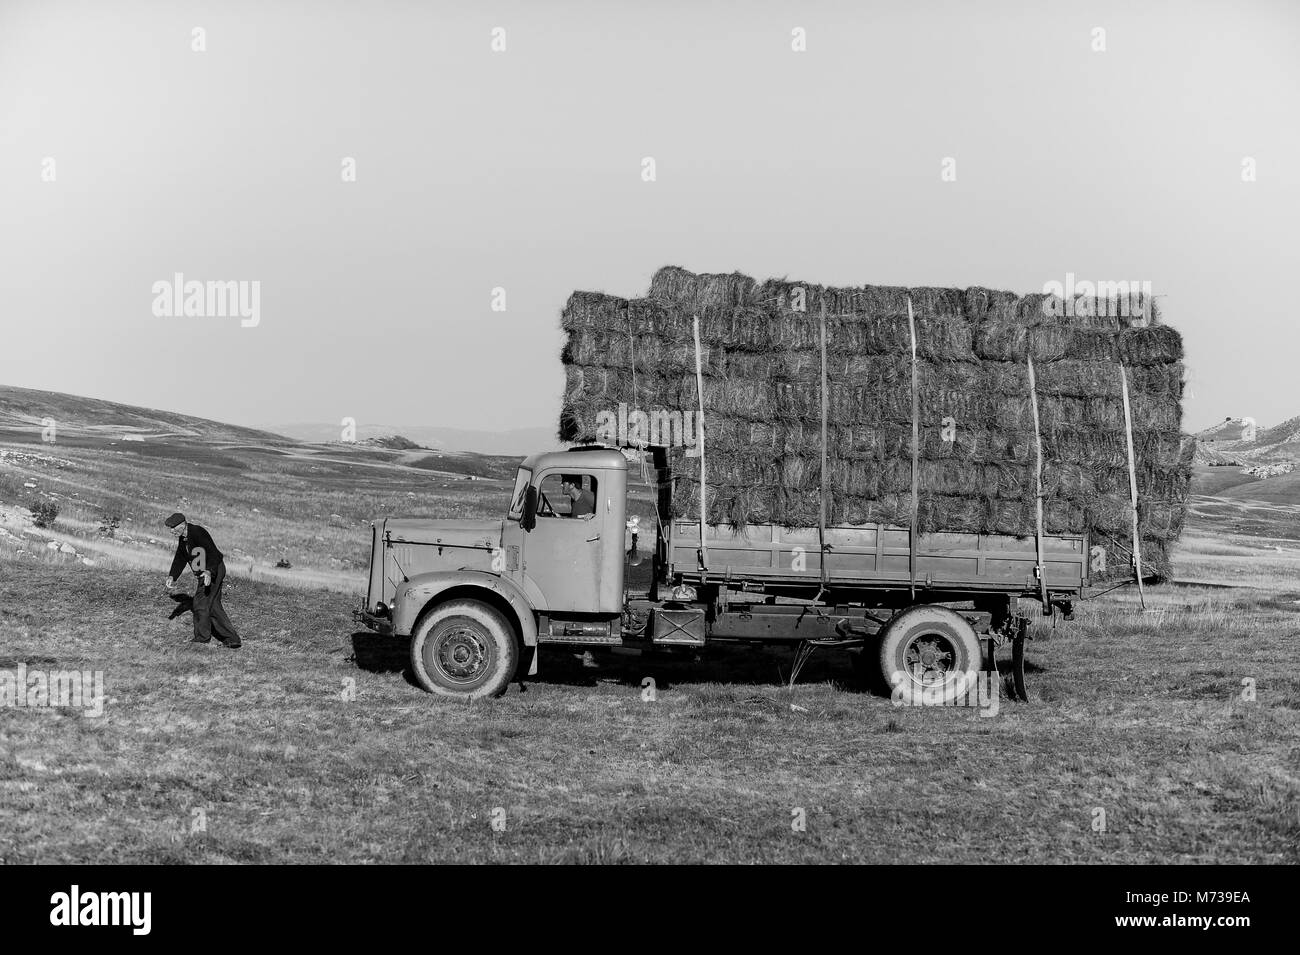 Image panoramique de vie dans les pays des Balkans, les agriculteurs au Monténégro stacking hay en hauteur sur un vieux camion jaune avec mountainlandscape dans l'arrière-plan Banque D'Images